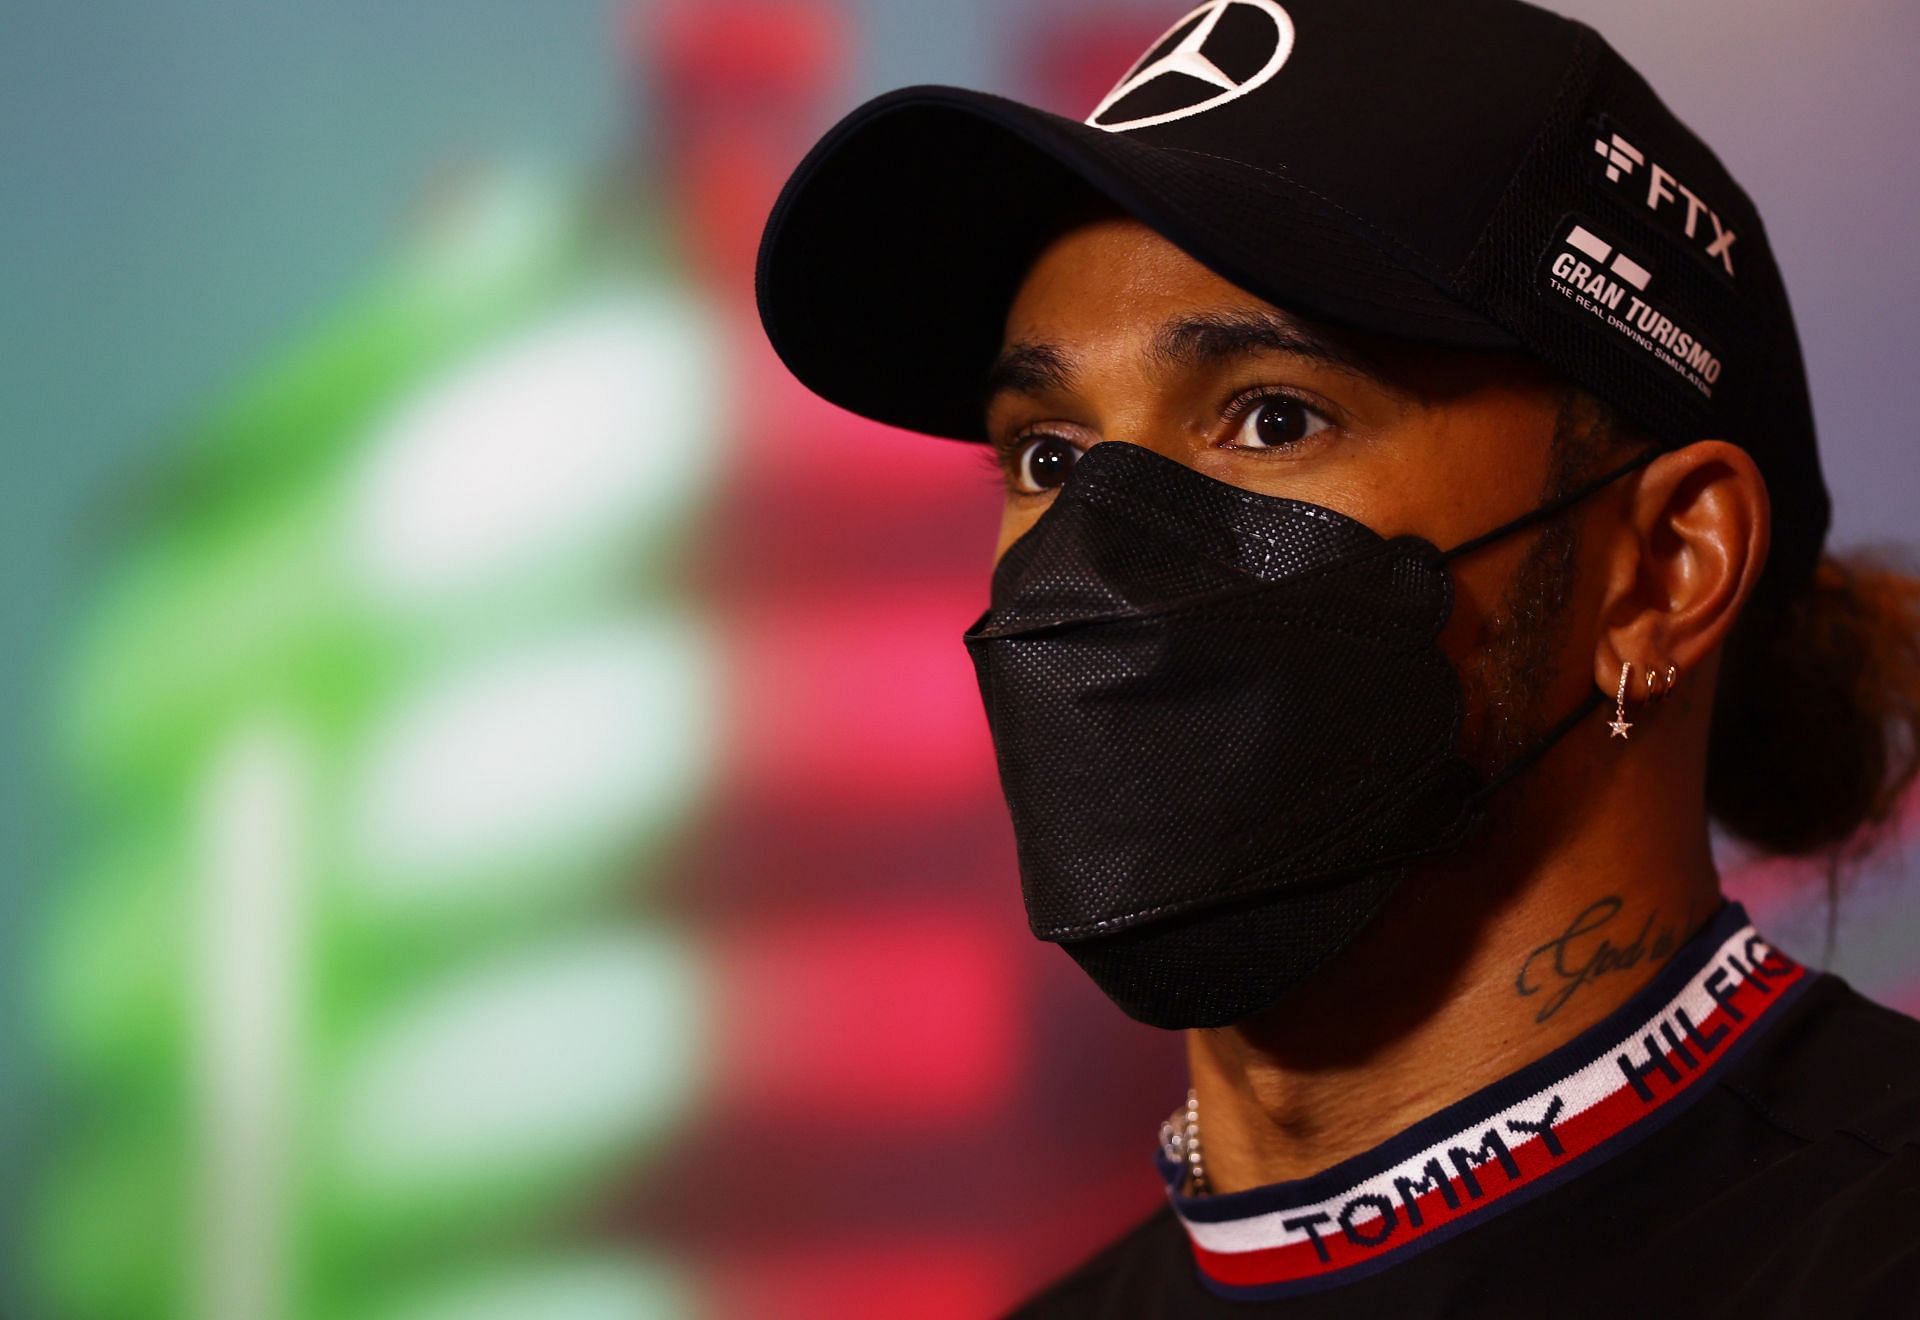 Lewis Hamilton during the F1 Grand Prix of Emilia Romagna - Practice &amp; Qualifying